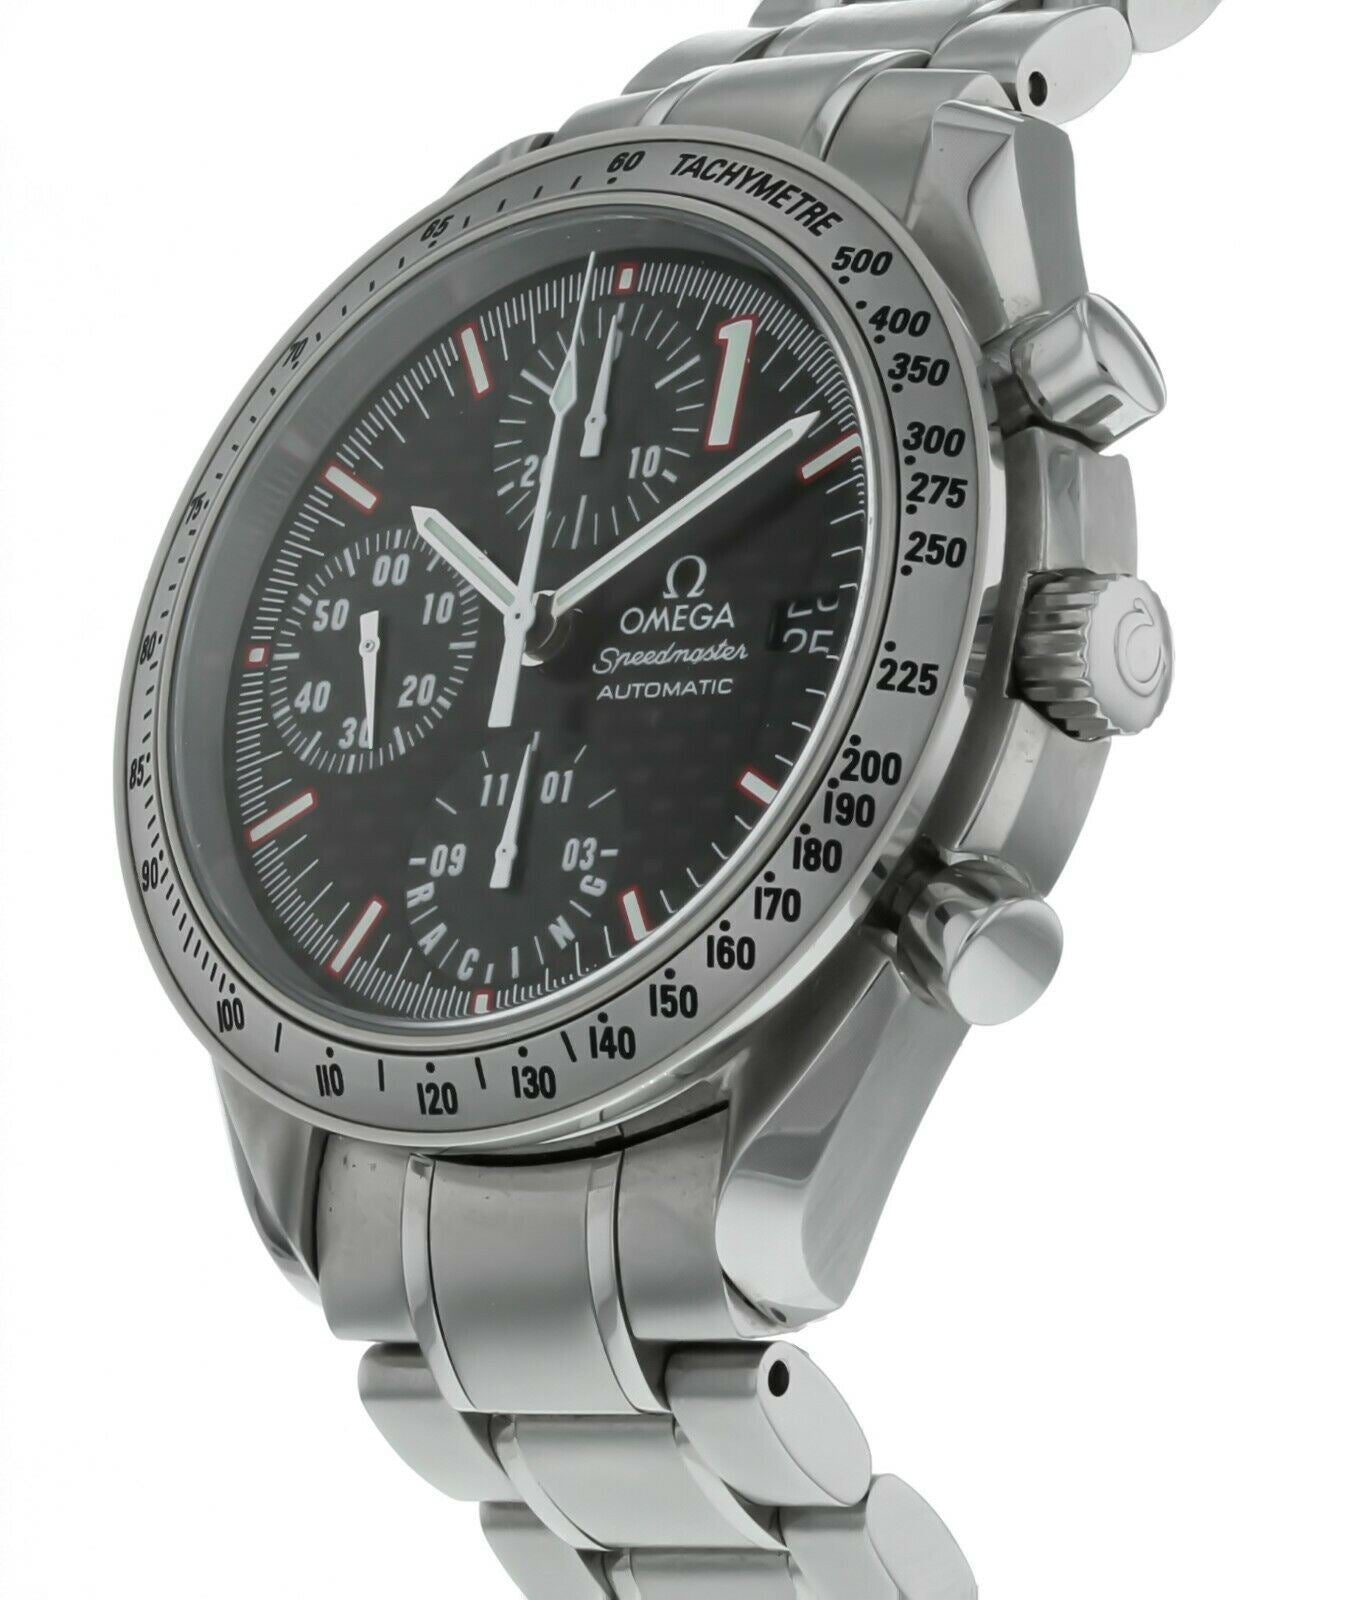 Omega Speedmaster Date Michael Schumacher Limited Edition Men's Watch 3519.50.00